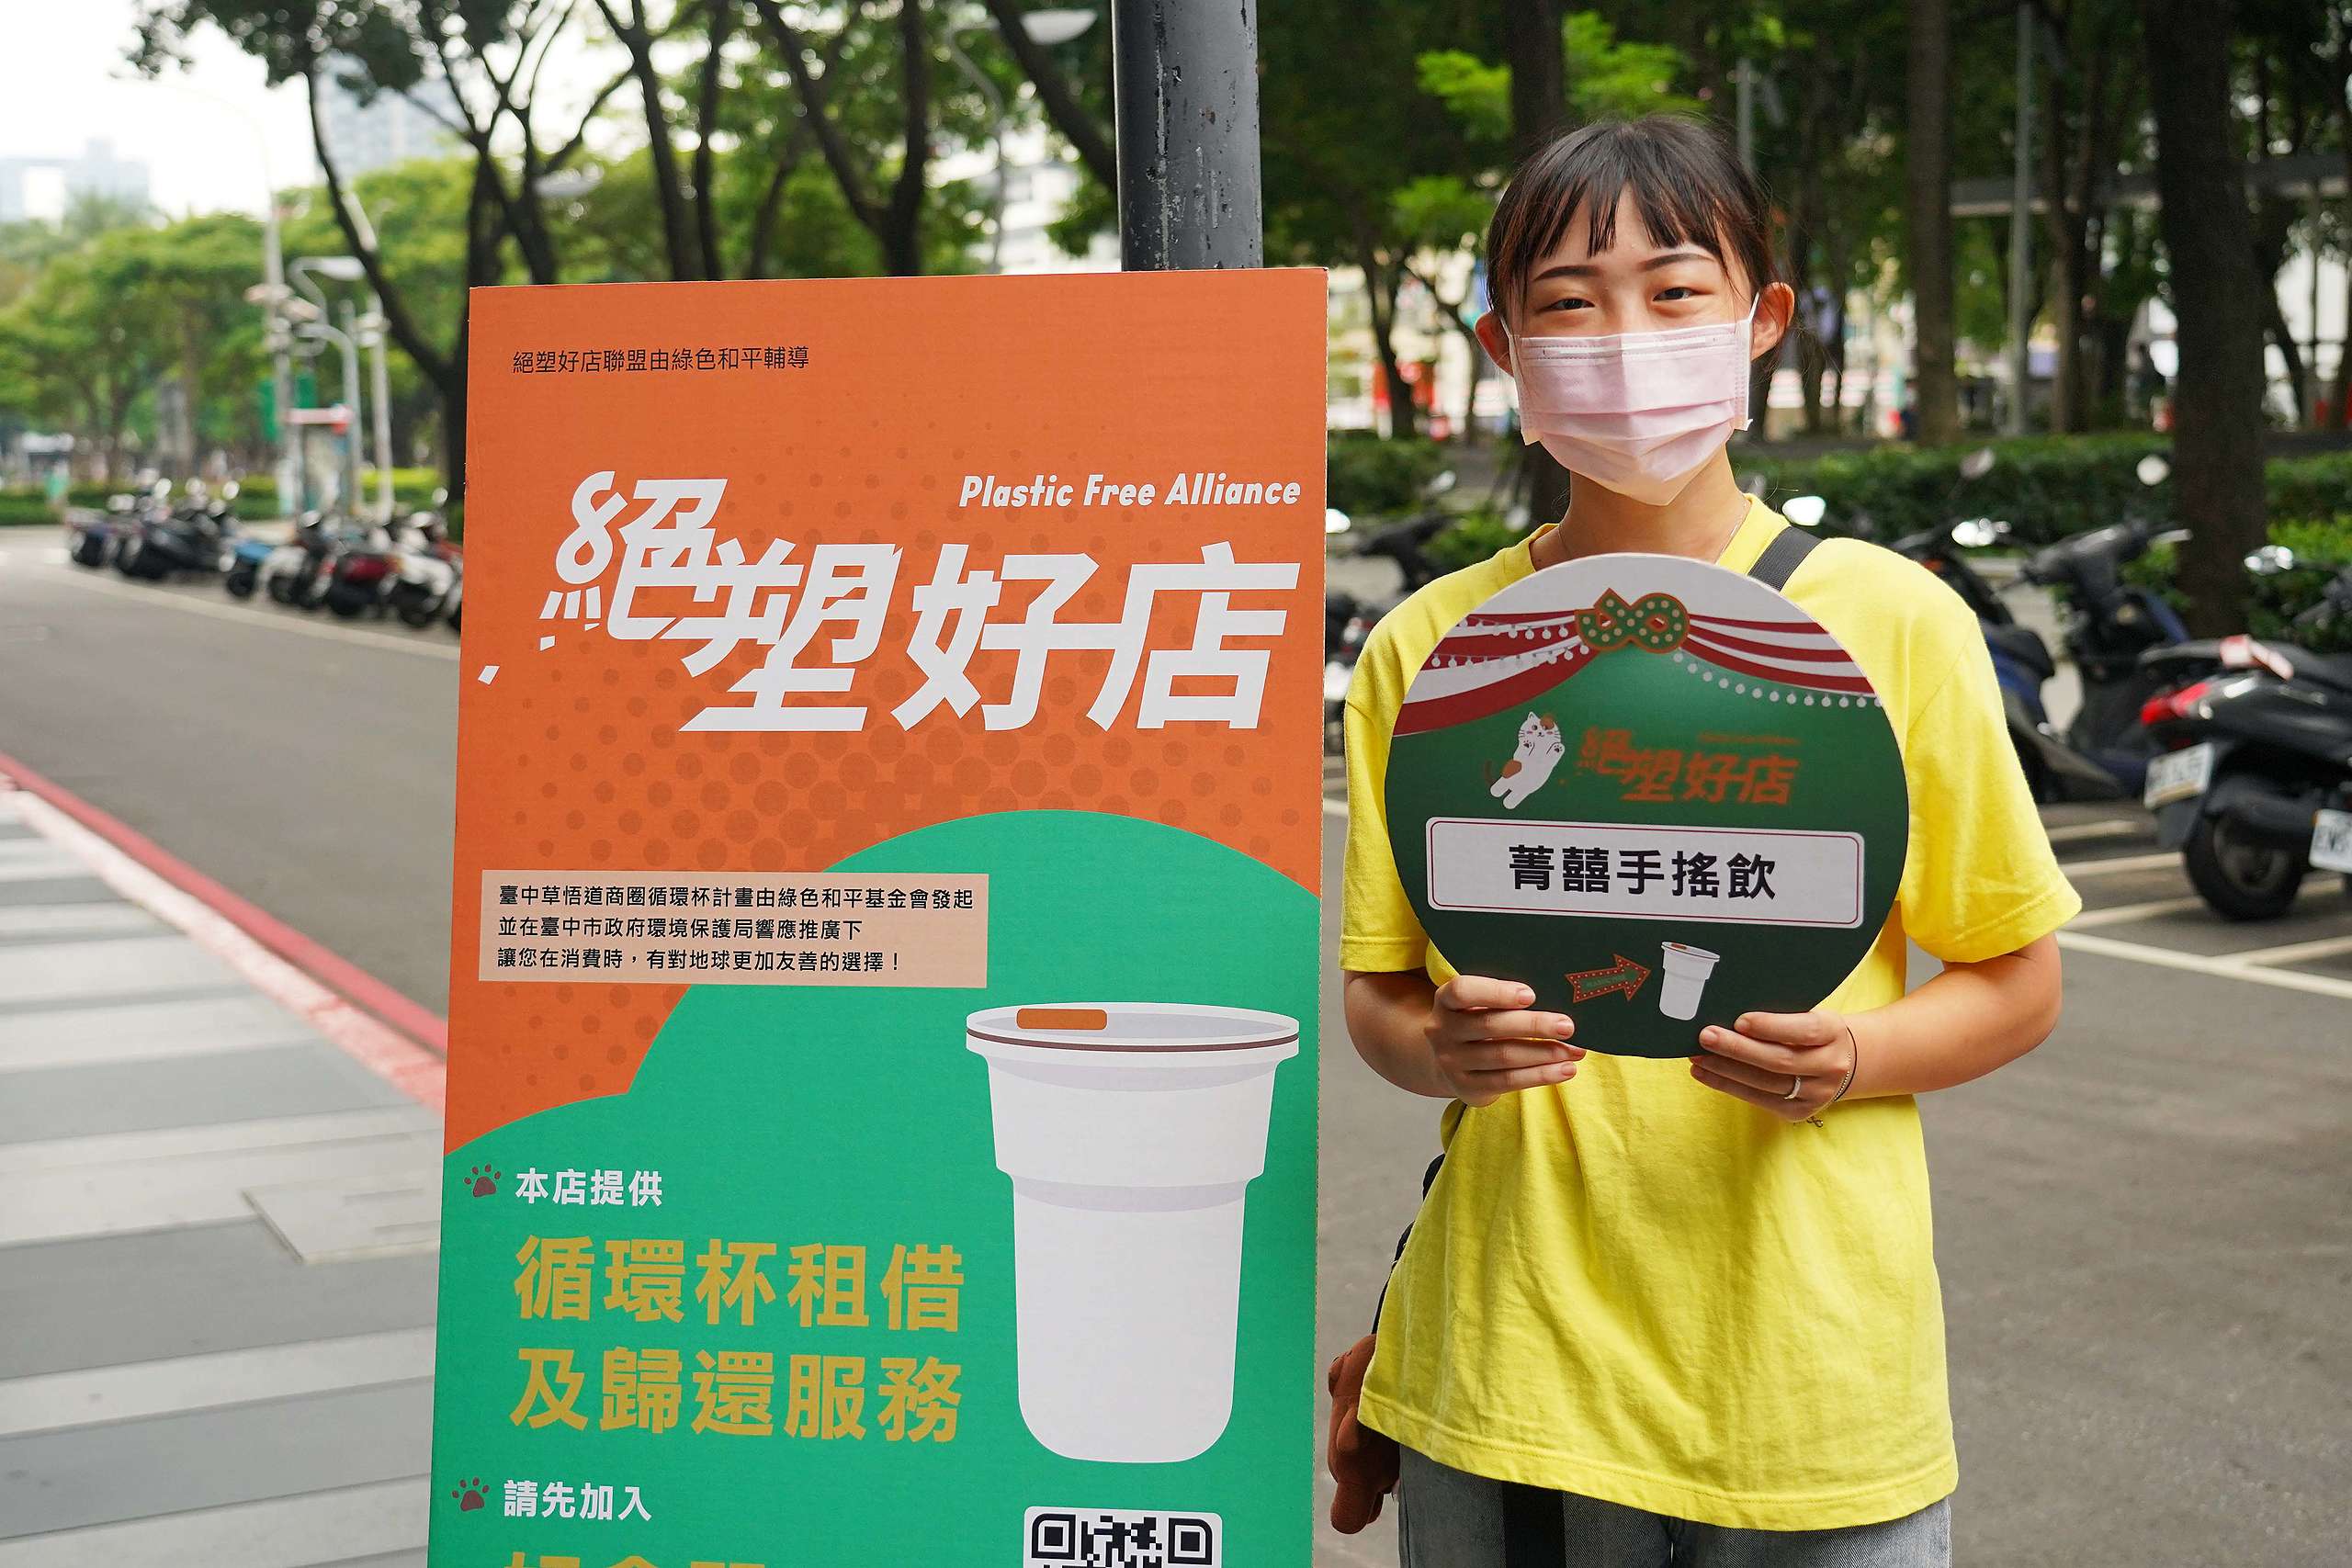 響應「絕塑好店」的臺中市飲料業者「菁囍手搖飲」也出席記者會。